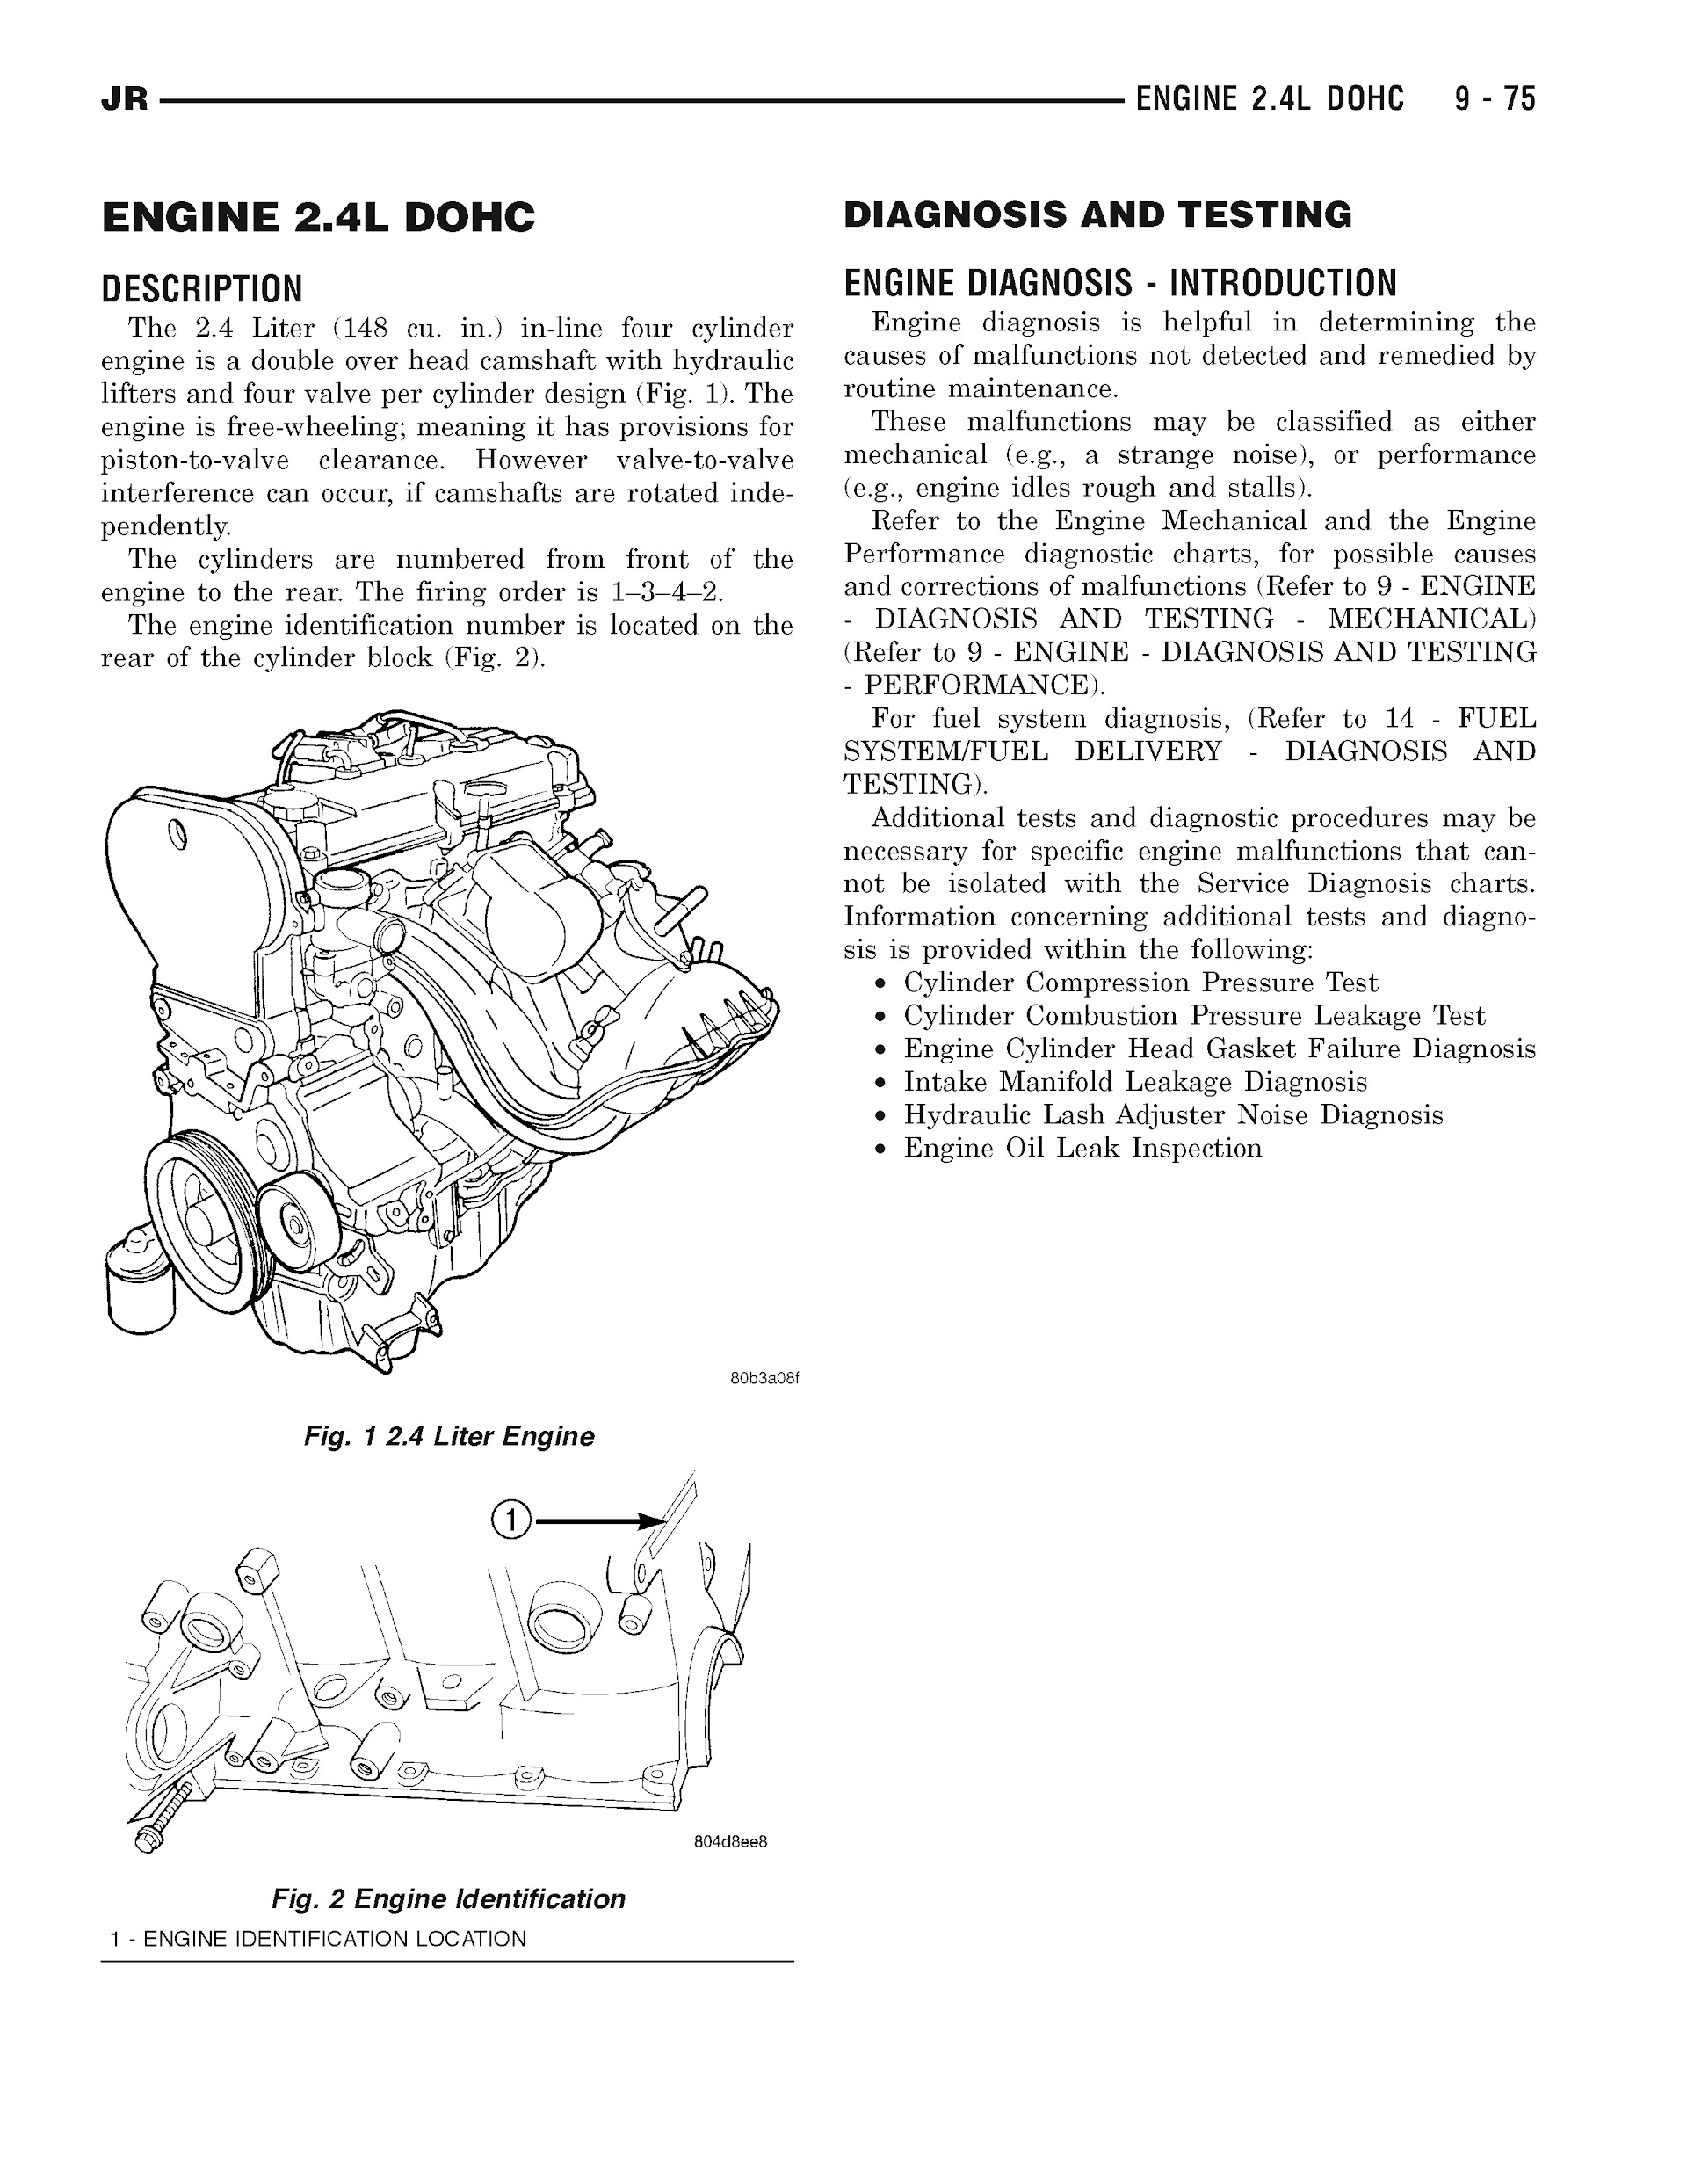 2001-2006 Chrysler Sebring Repair Manual, Engine 2.4L DOHC